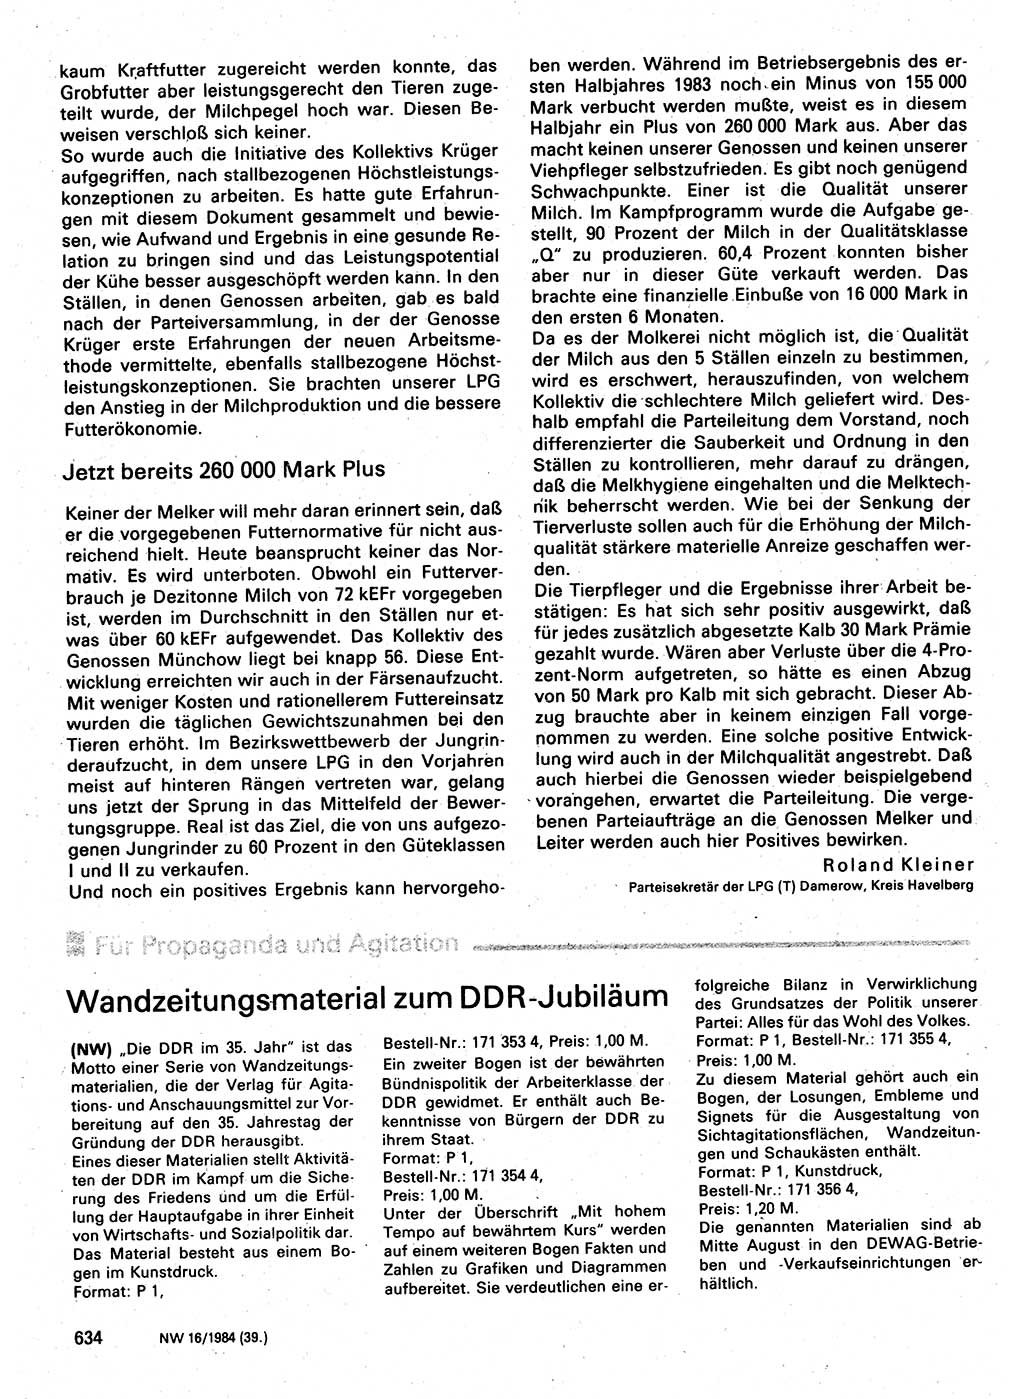 Neuer Weg (NW), Organ des Zentralkomitees (ZK) der SED (Sozialistische Einheitspartei Deutschlands) für Fragen des Parteilebens, 39. Jahrgang [Deutsche Demokratische Republik (DDR)] 1984, Seite 634 (NW ZK SED DDR 1984, S. 634)